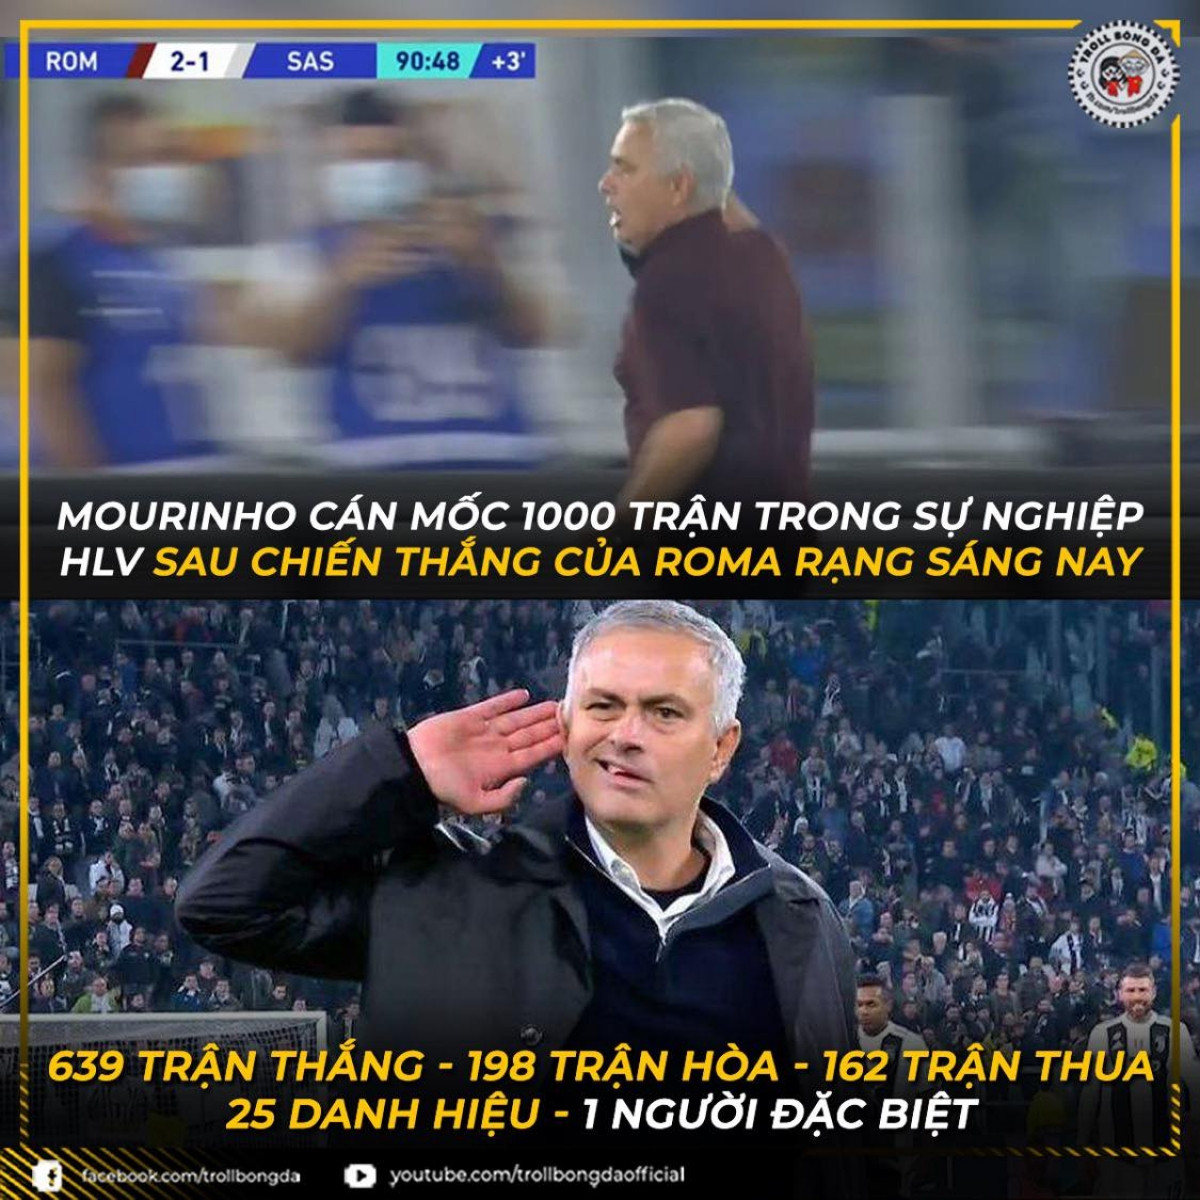 HLV Mourinho cán mốc 1000 trận đấu trong sự nghiệp huấn luyện. (Ảnh: Troll bóng đá). 